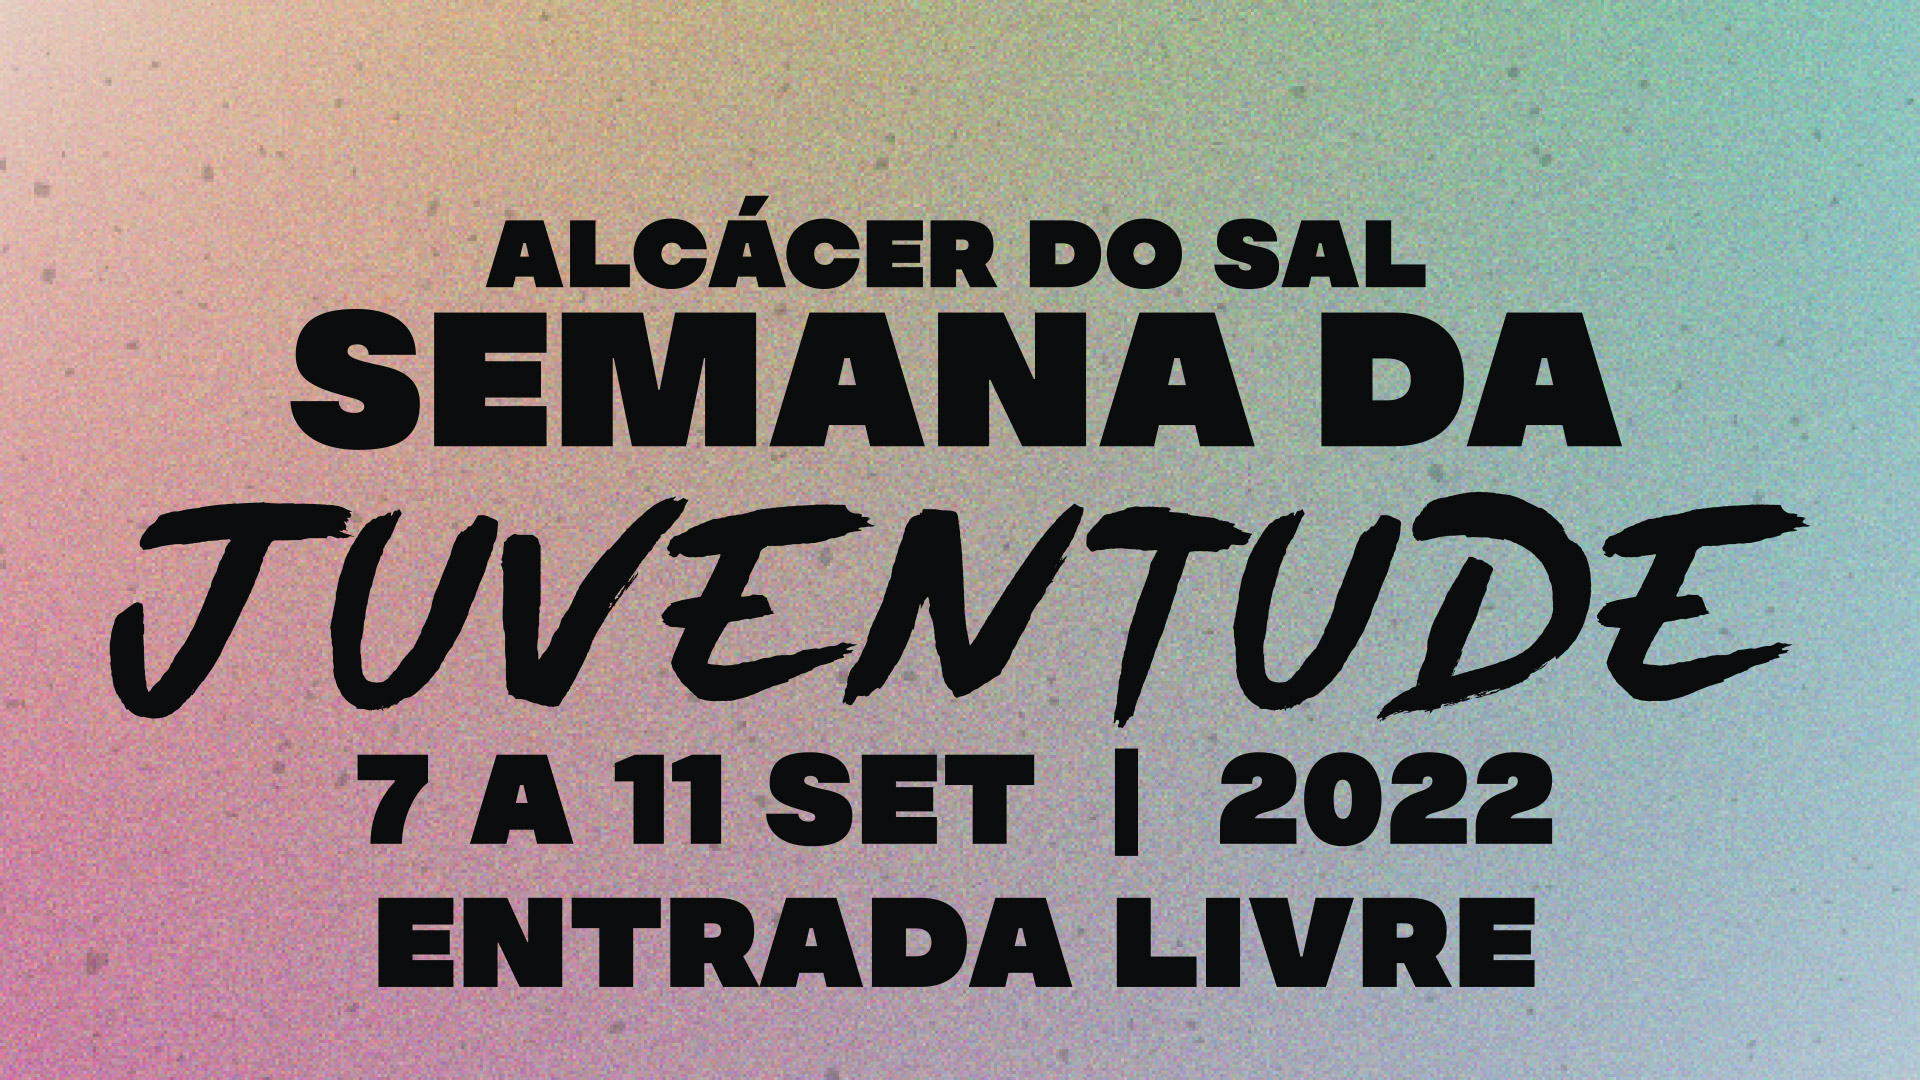 Alcácer do Sal lança programação completa da Semana da Juventude